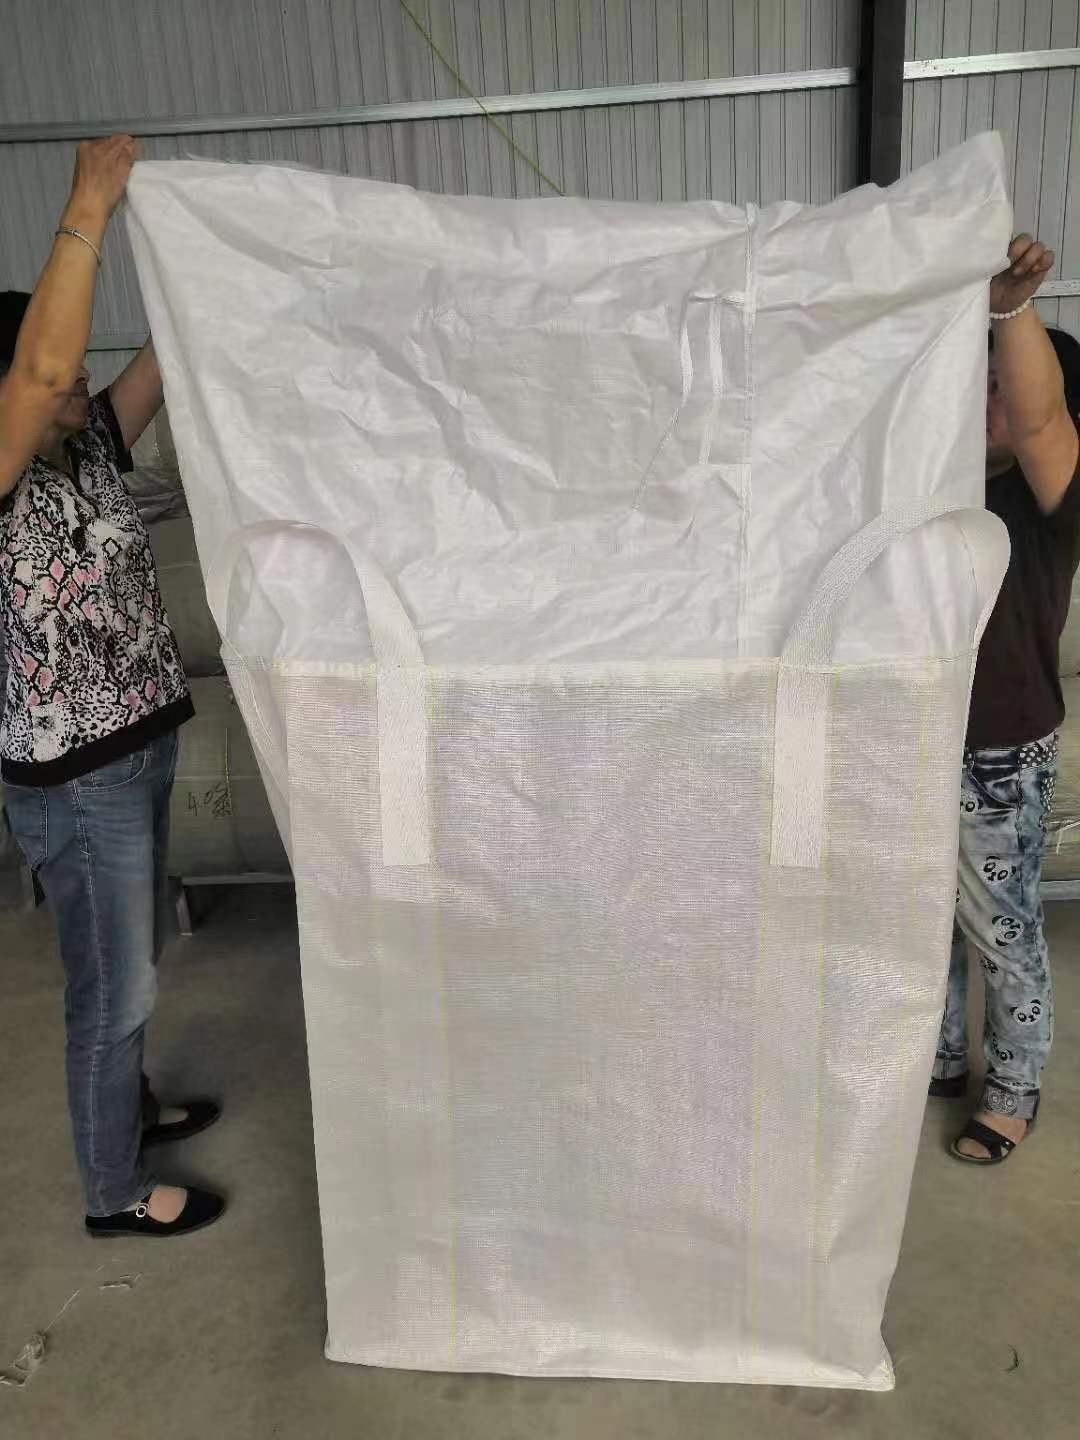 1 PP sling bag to load 1000-2000kg custom sling bags cheap sling